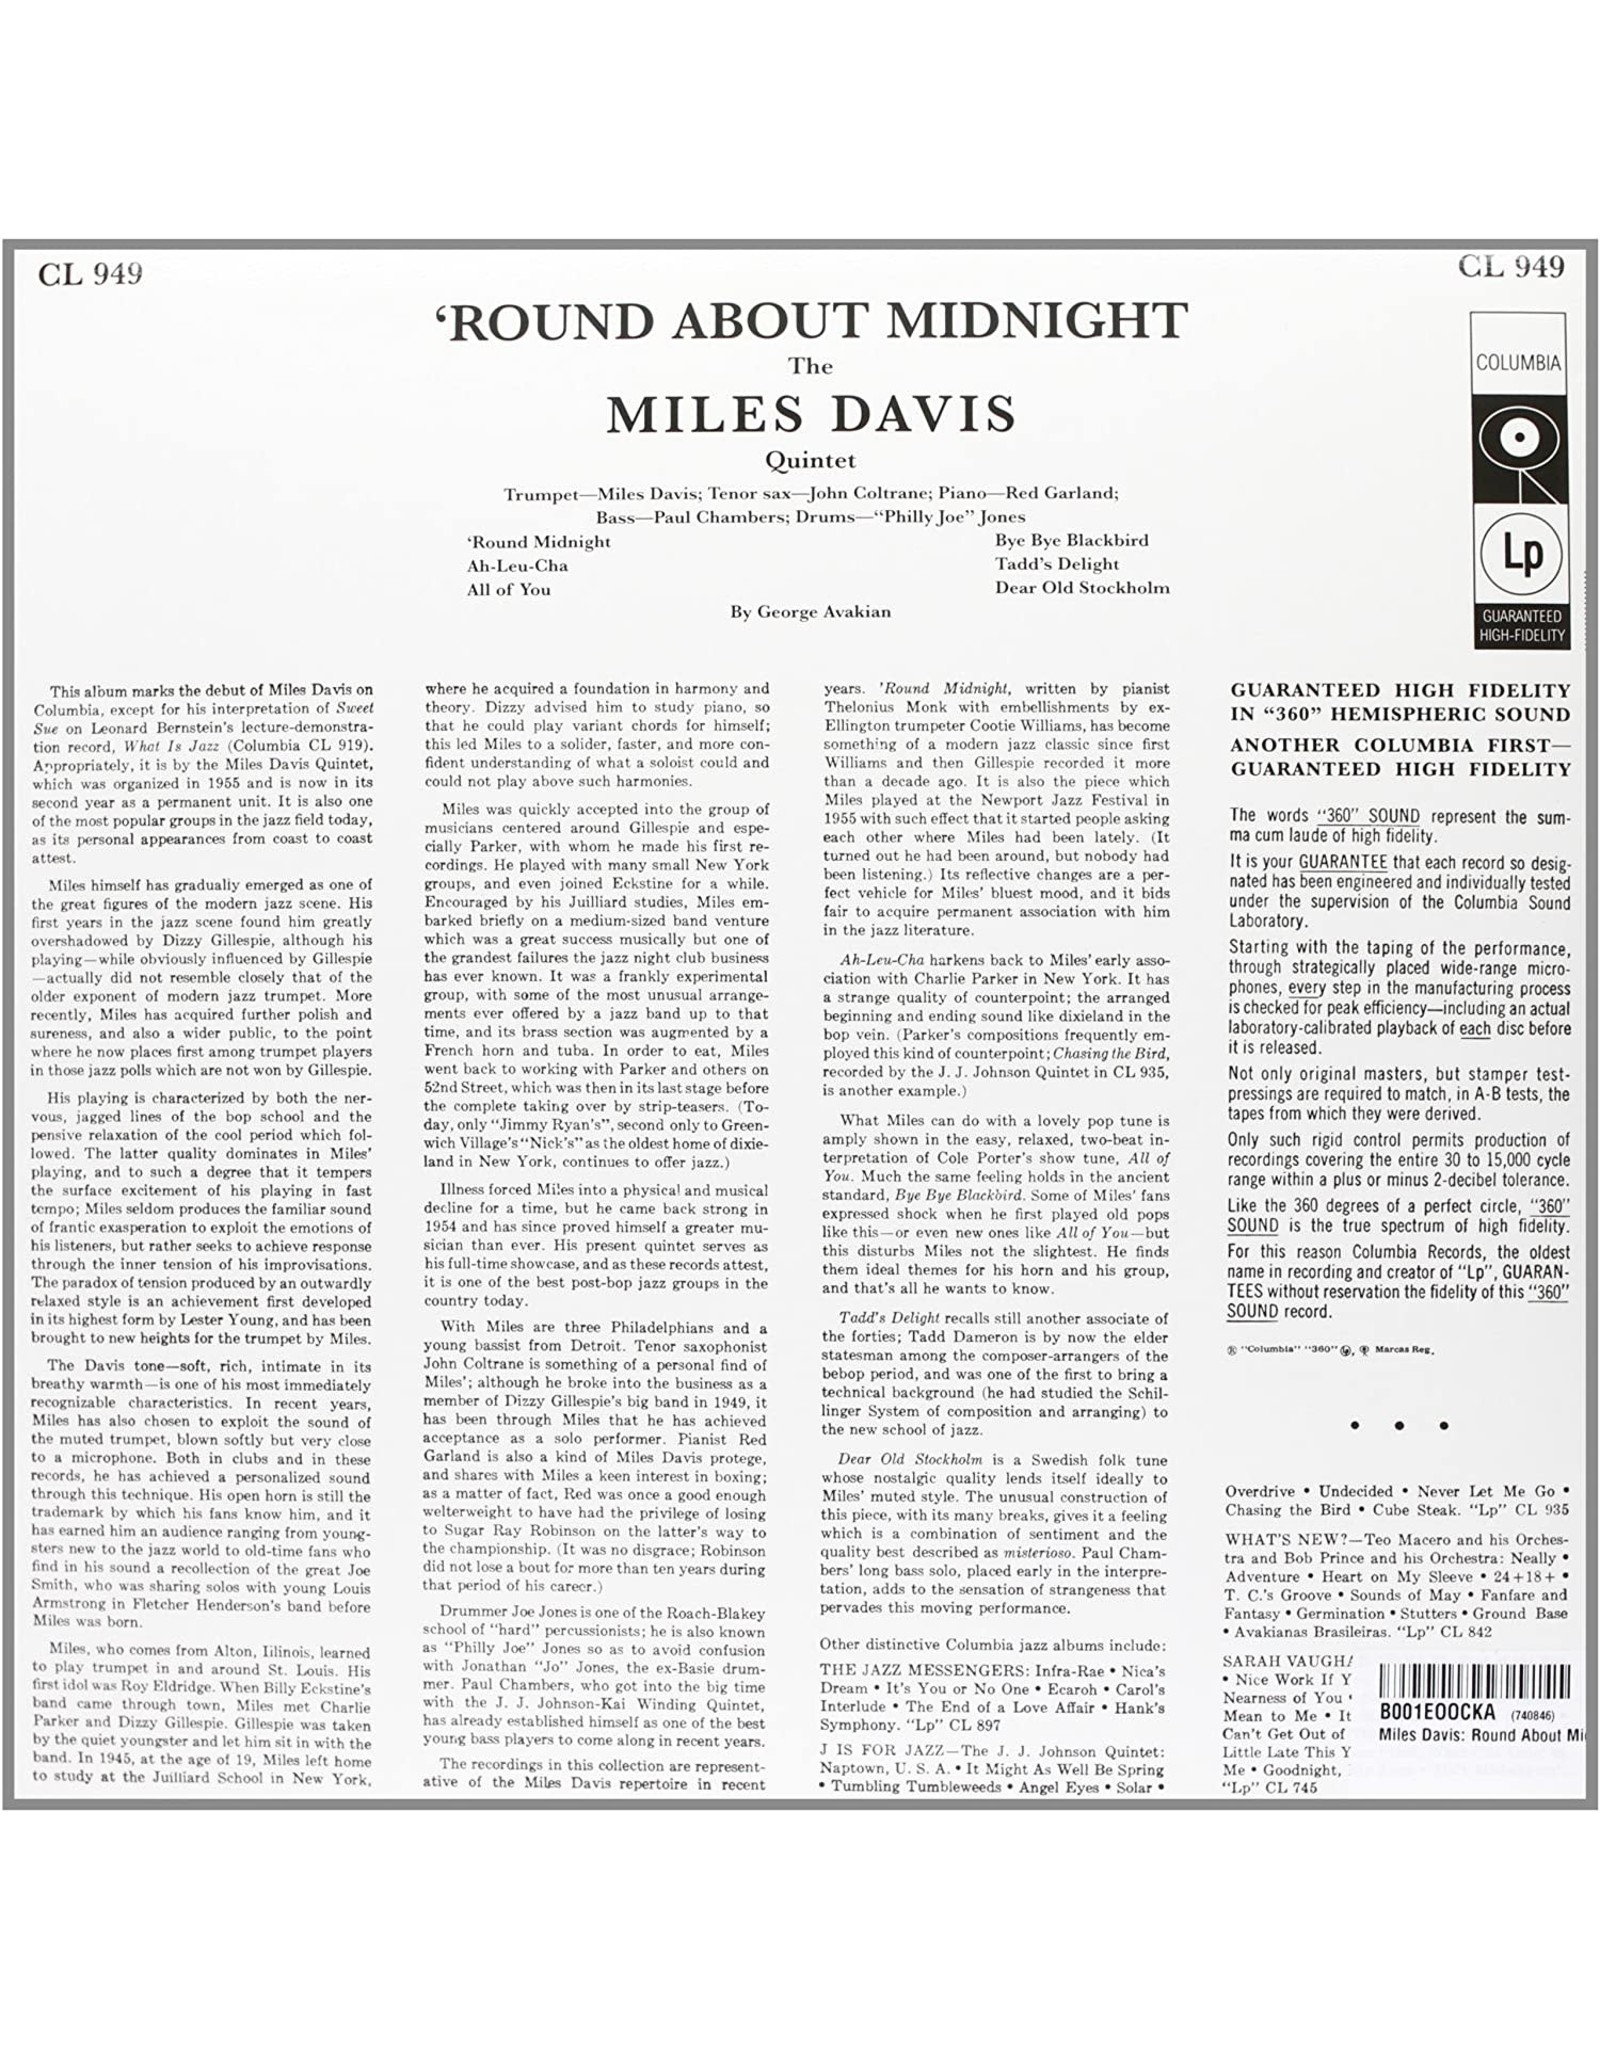 Miles Davis - Round About Midnight (Mono)